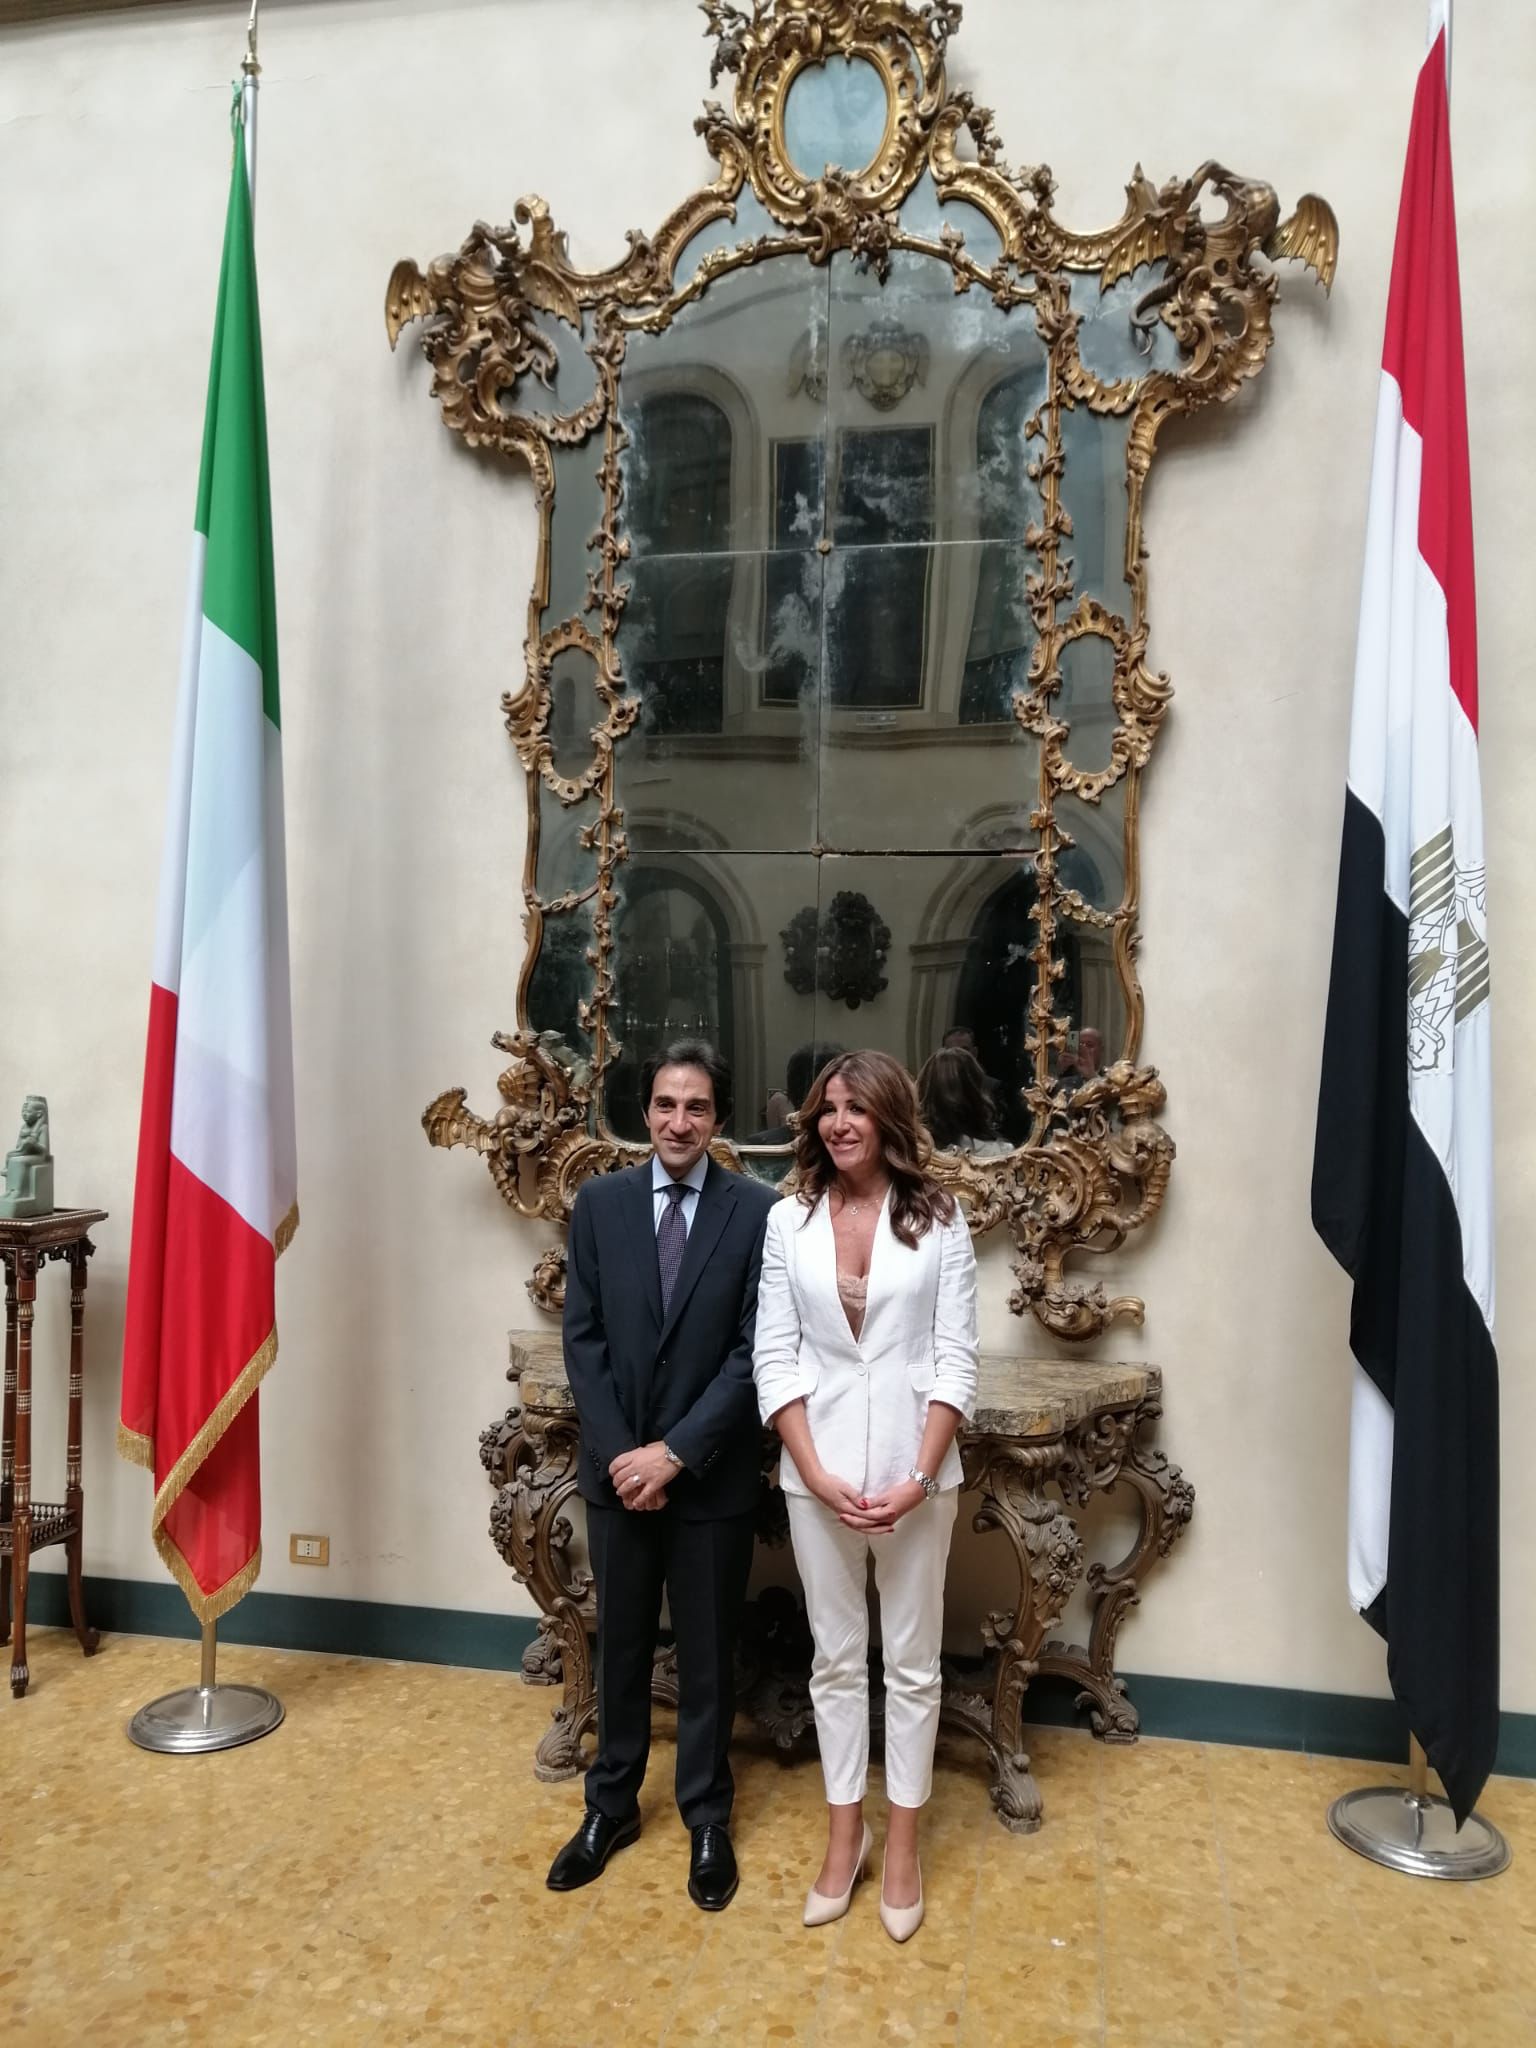 His Excellency the Egyptian Ambassador received President Lorenza Morello at Villa Ada